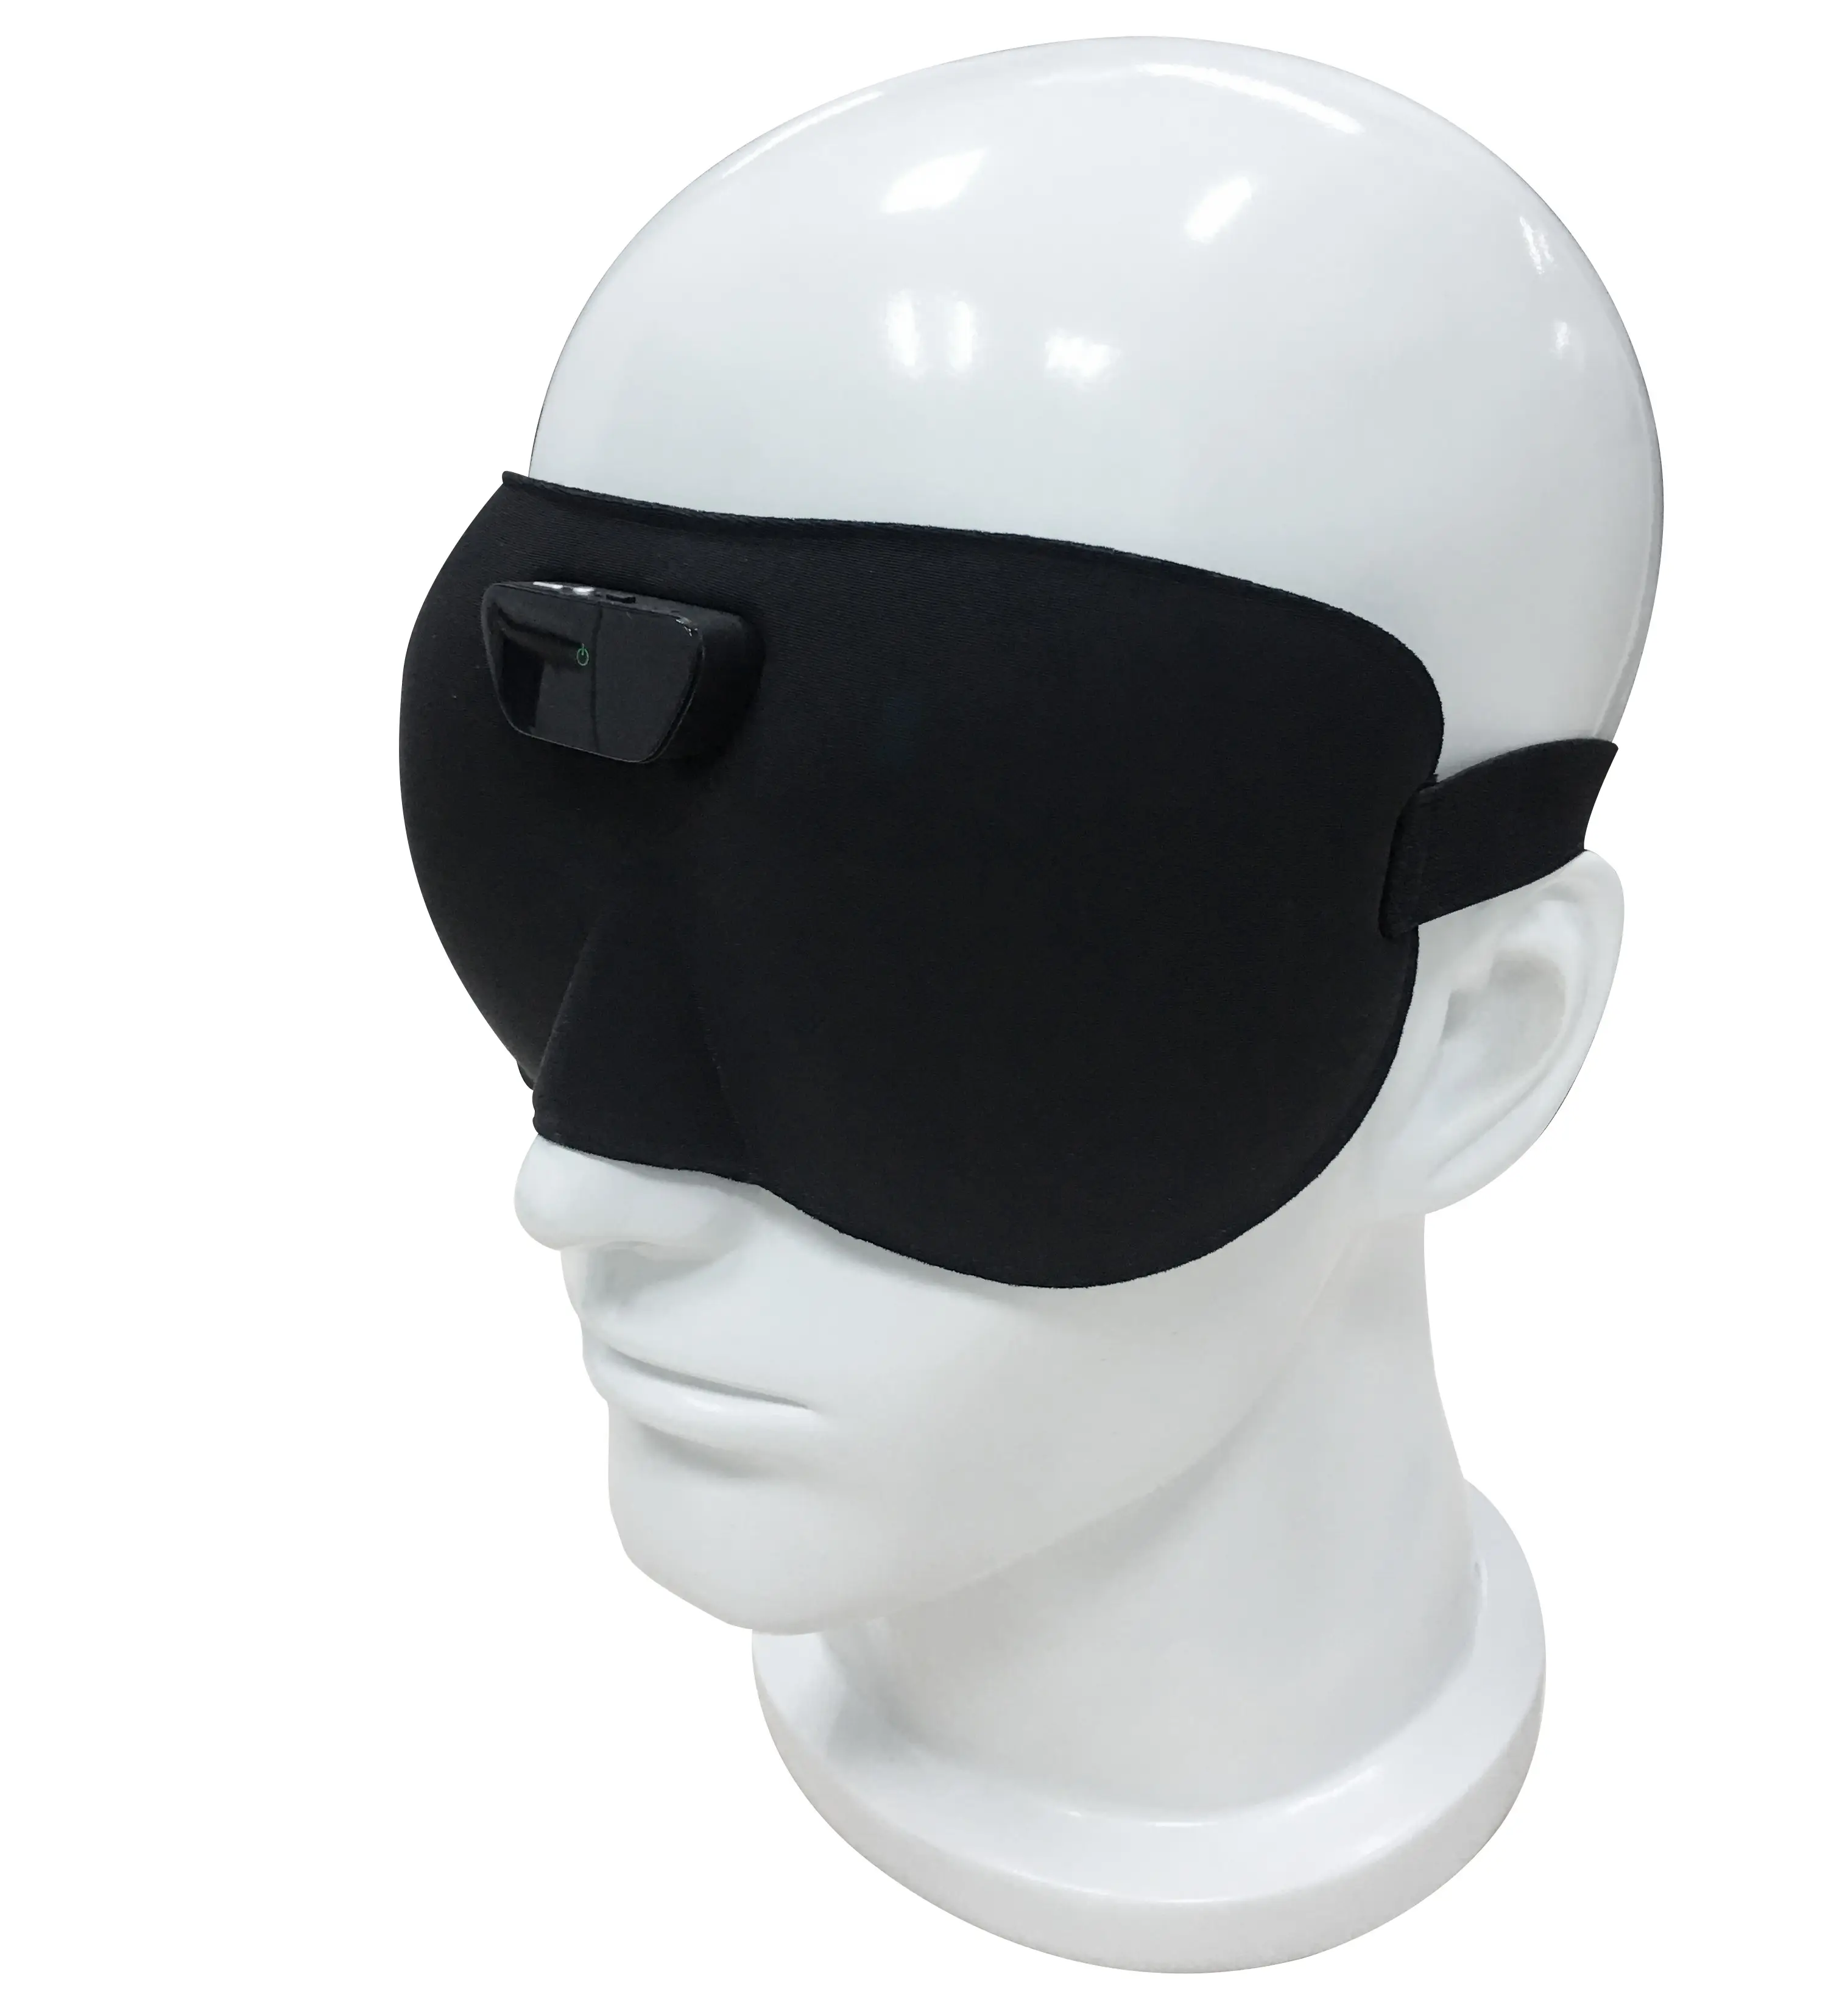 2020ヘルスケア製品いびきストッパーいびき防止装置いびきマスク